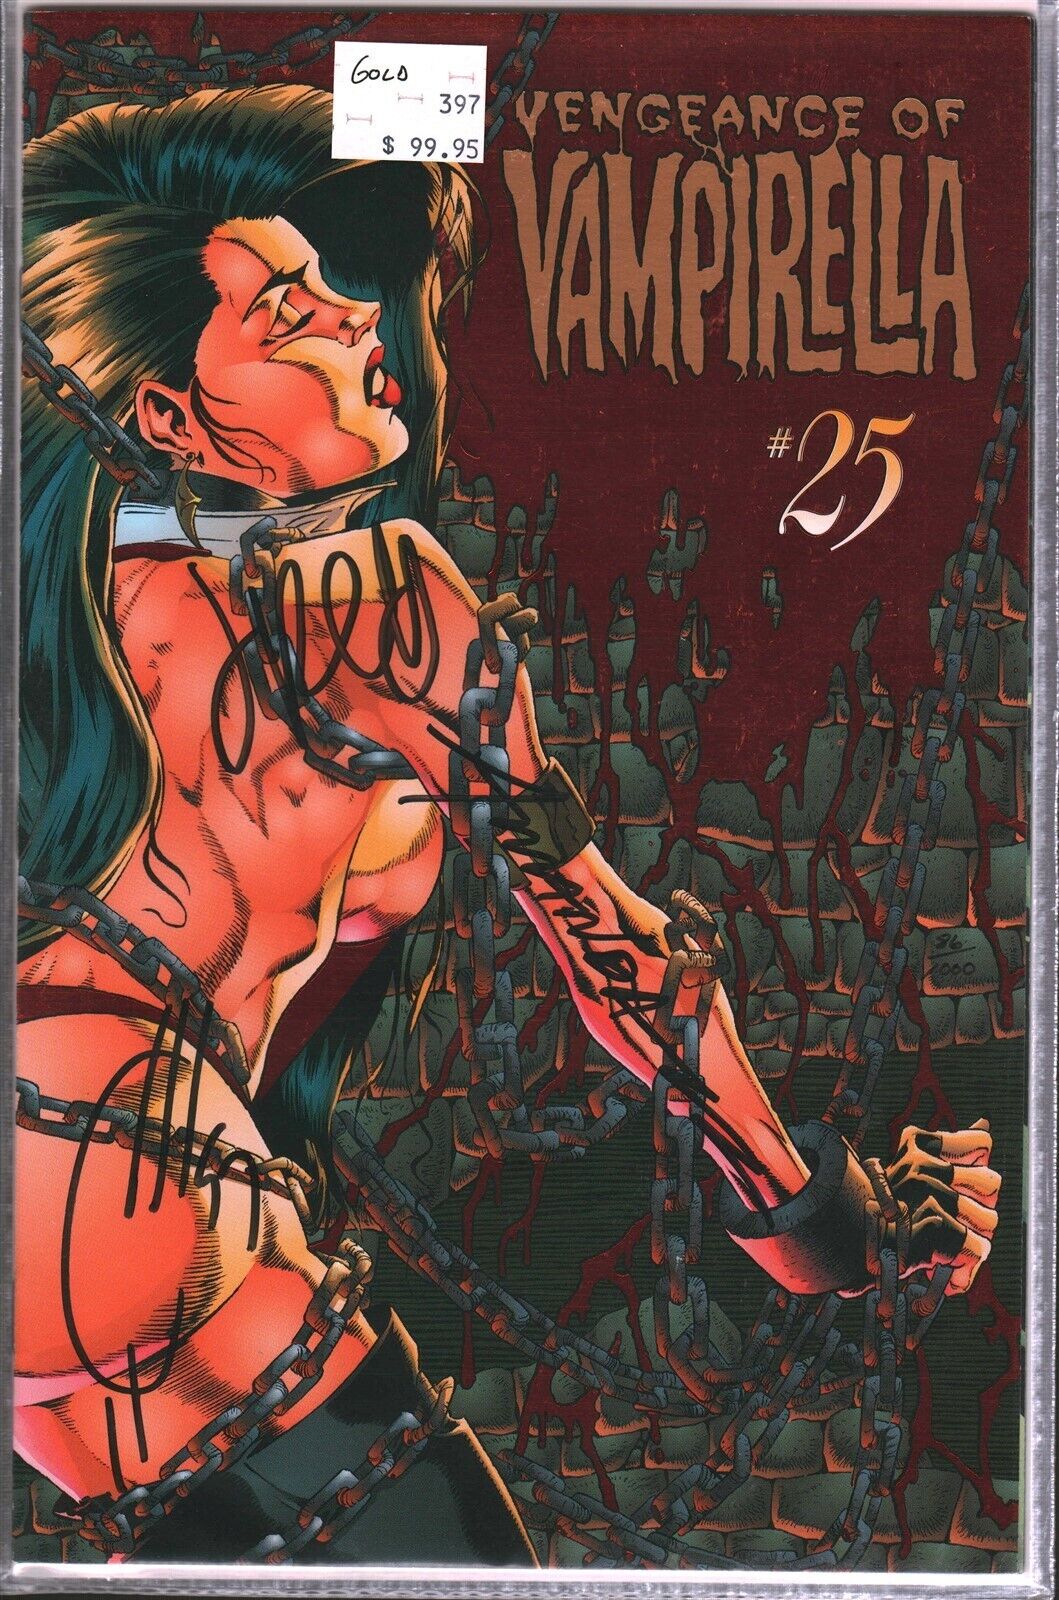 VTG Vengeance of Vampirella #25 Gold Edition Signed Comic Book Includes COA